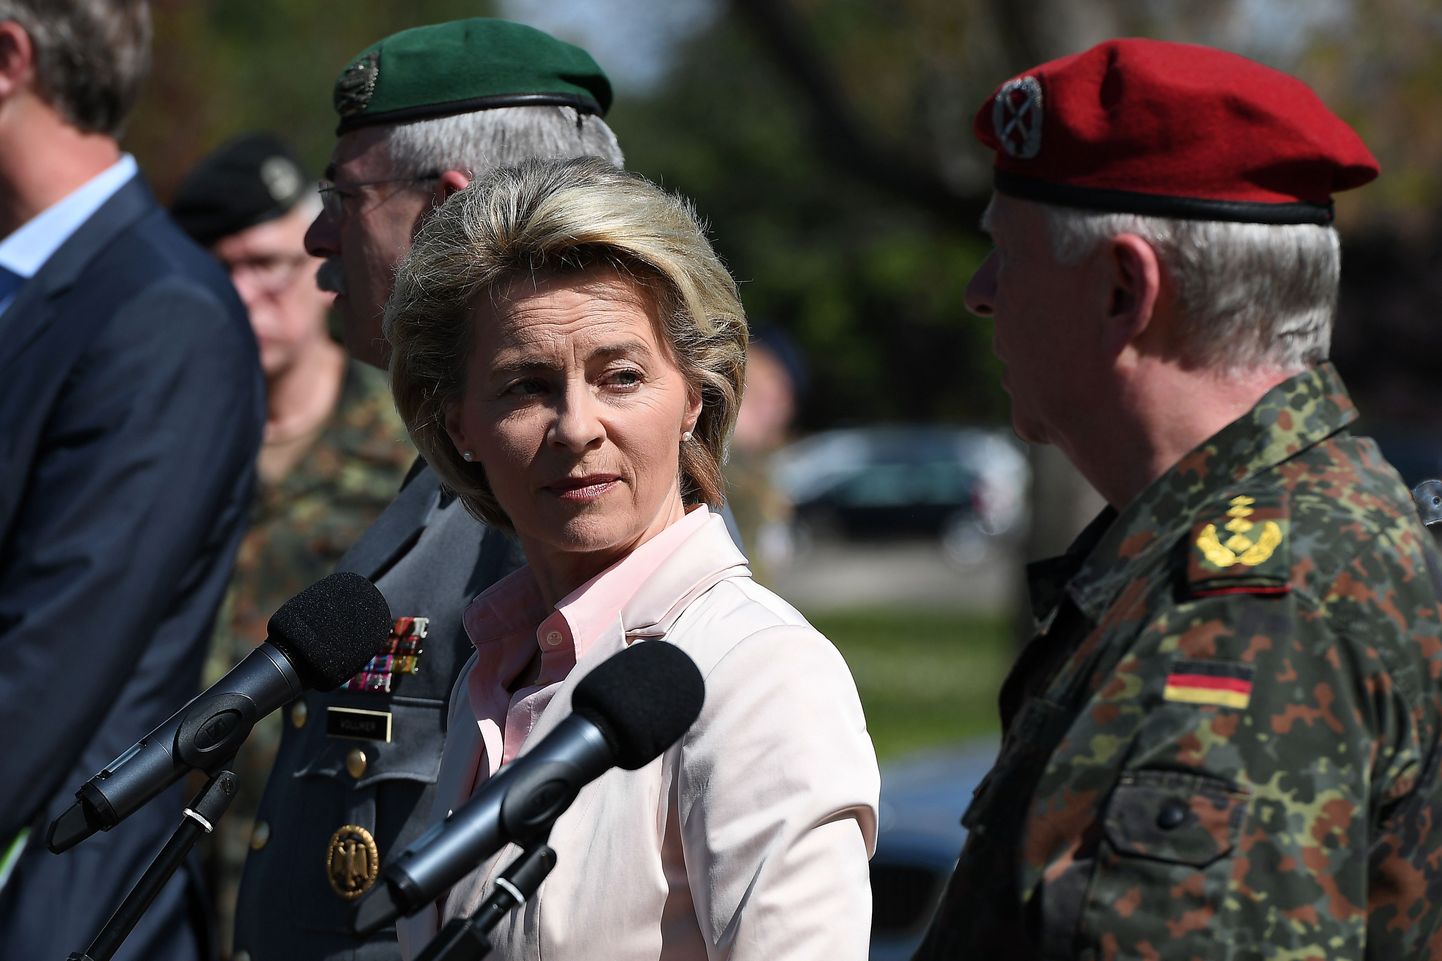 Saksa kaitseminister Ursula von der Leyen Illkirchi baasis. Skandaal on pannud kaitseministri piinlikku olukorda.